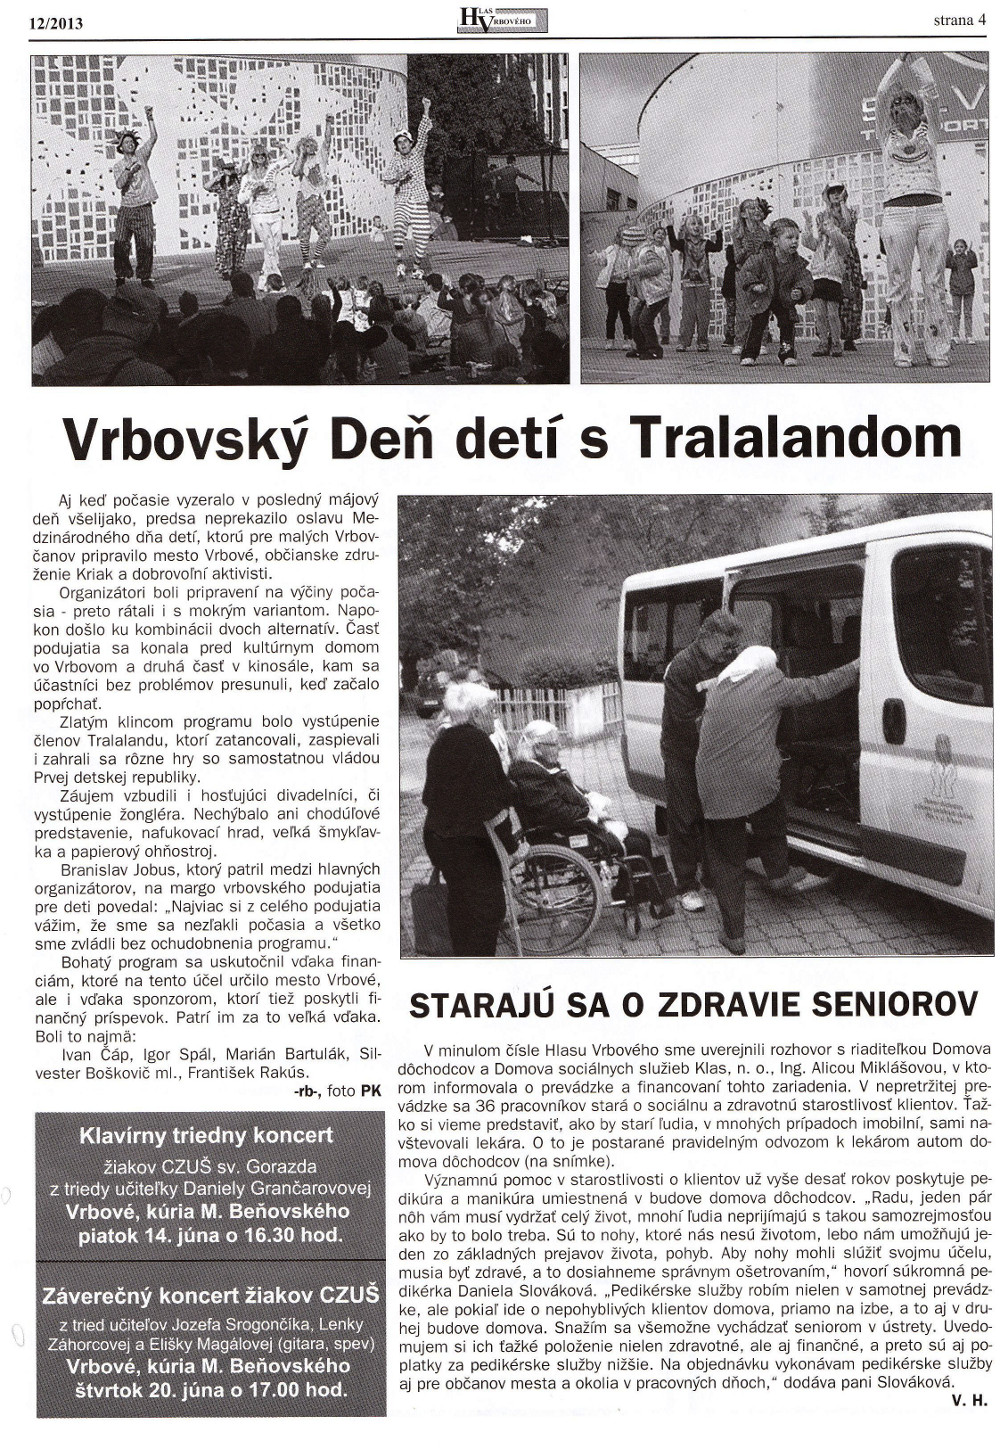 Hlas Vrbového 12/2013, strana 4